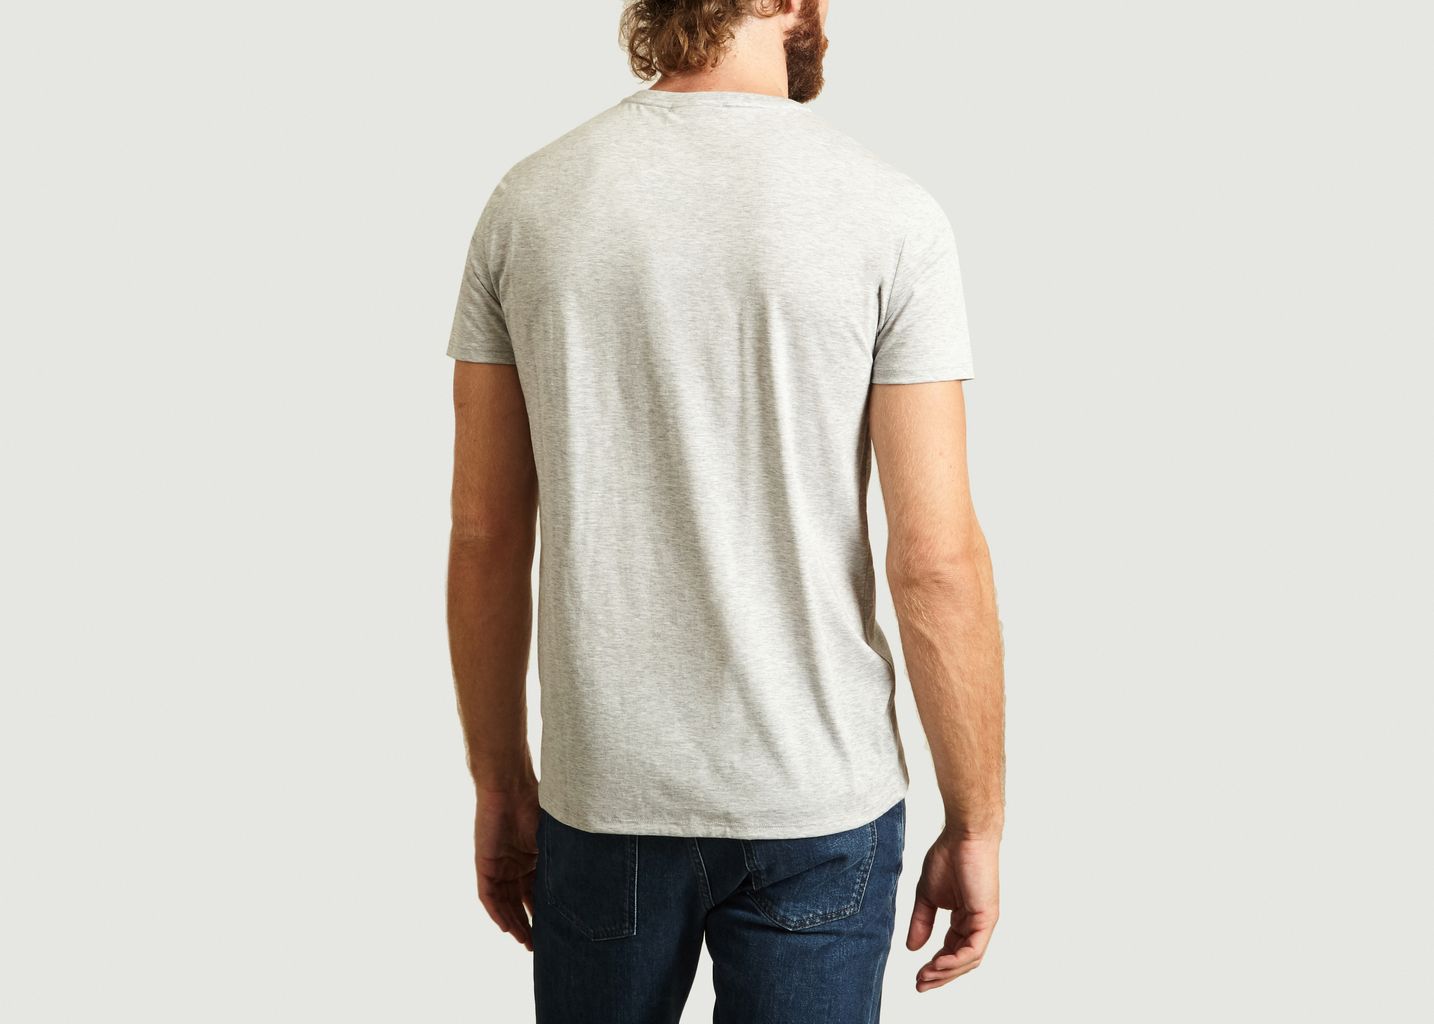 Pima Cotton T-shirt - Lacoste